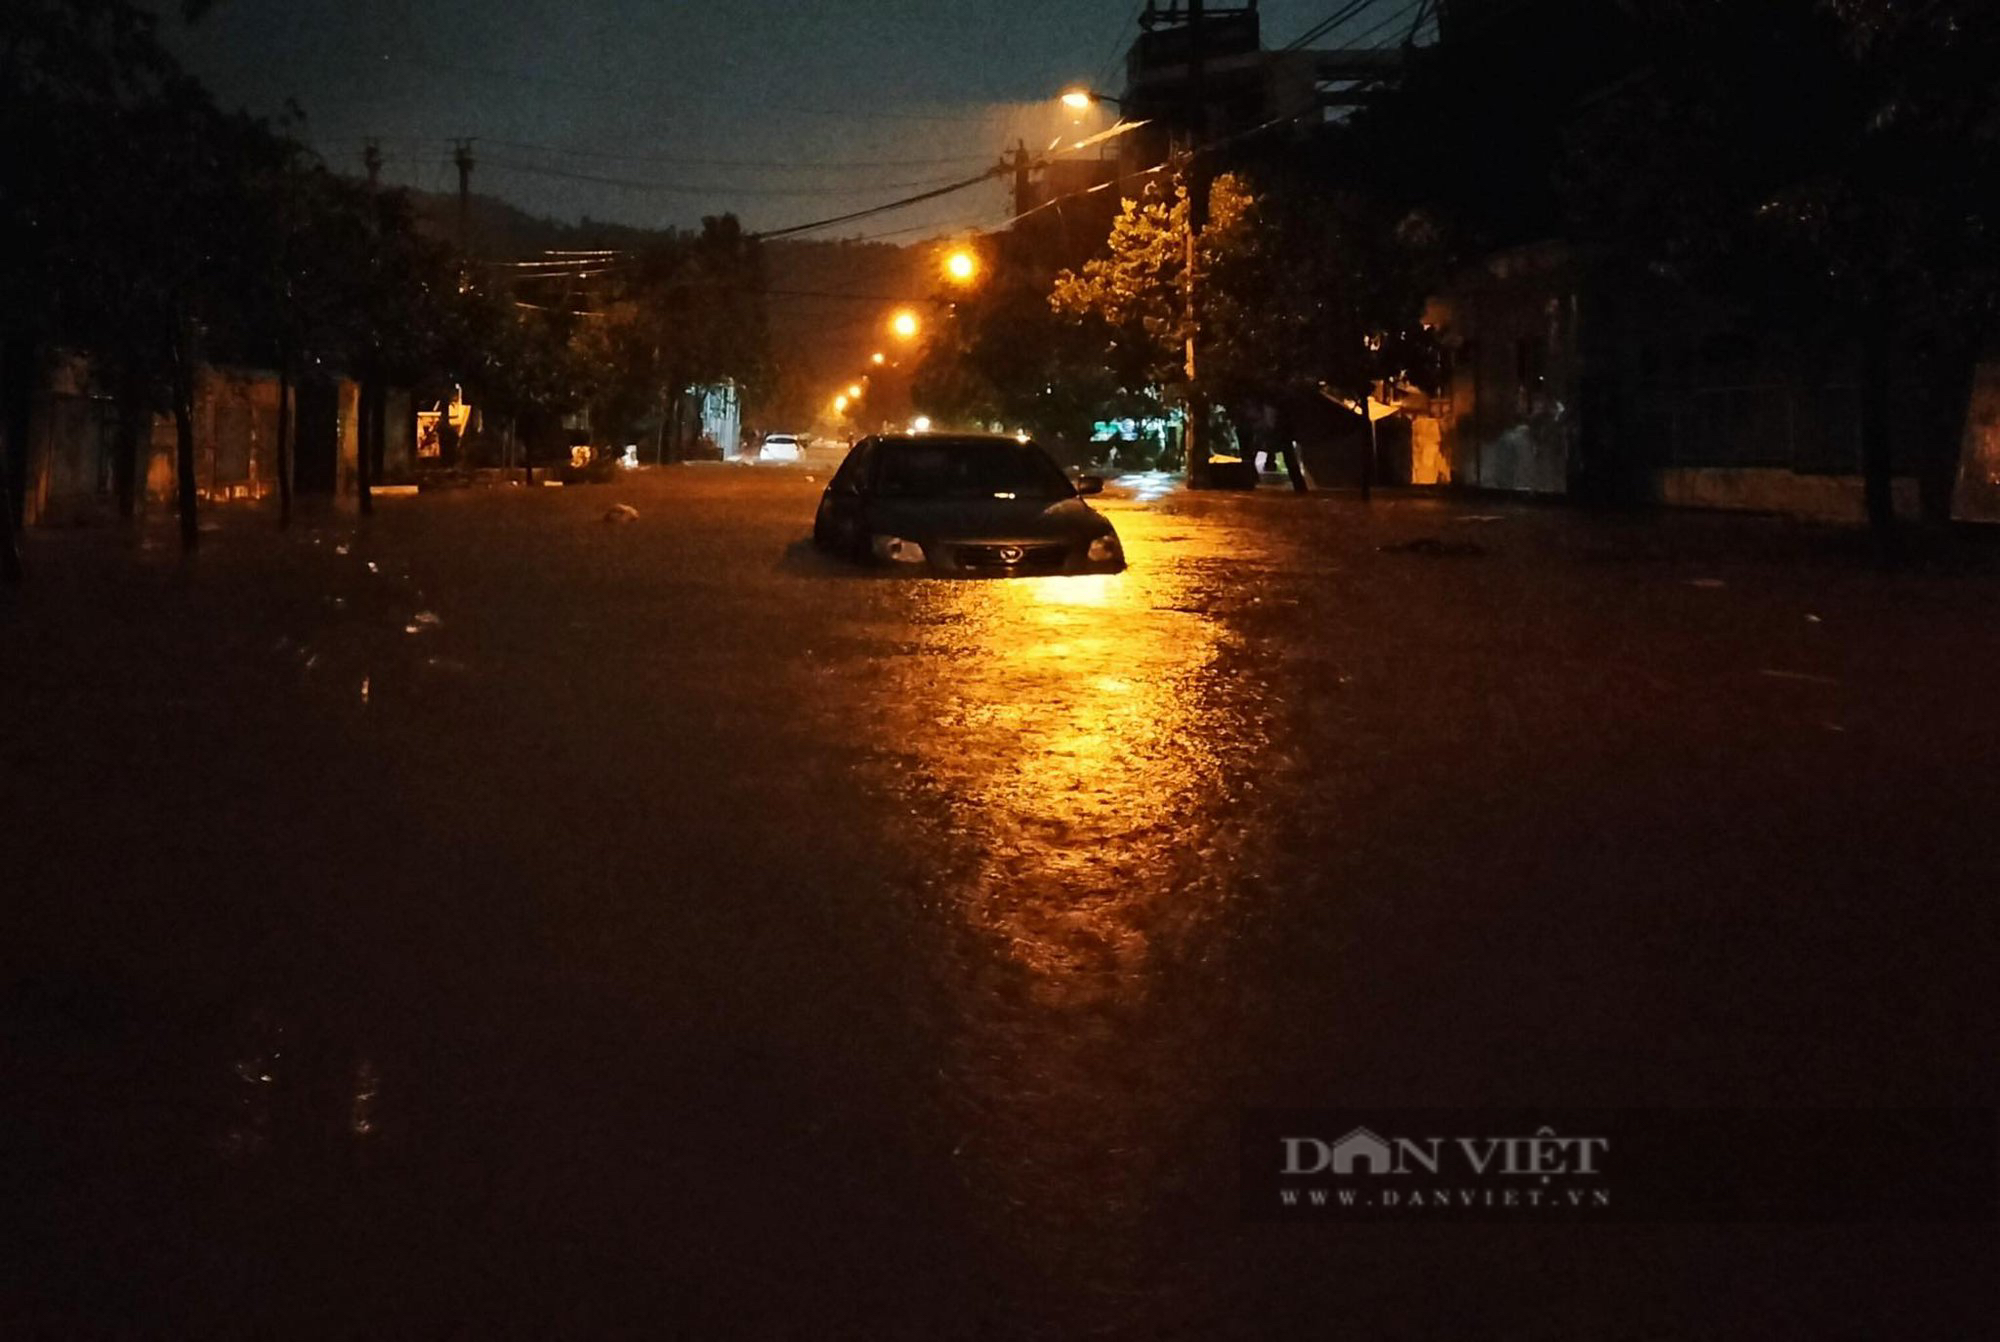 Bình Định đổ mưa lớn, nhiều tuyến đường phố Quy Nhơn ngập sâu, nước ùa vào nhà dân trong đêm - Ảnh 5.